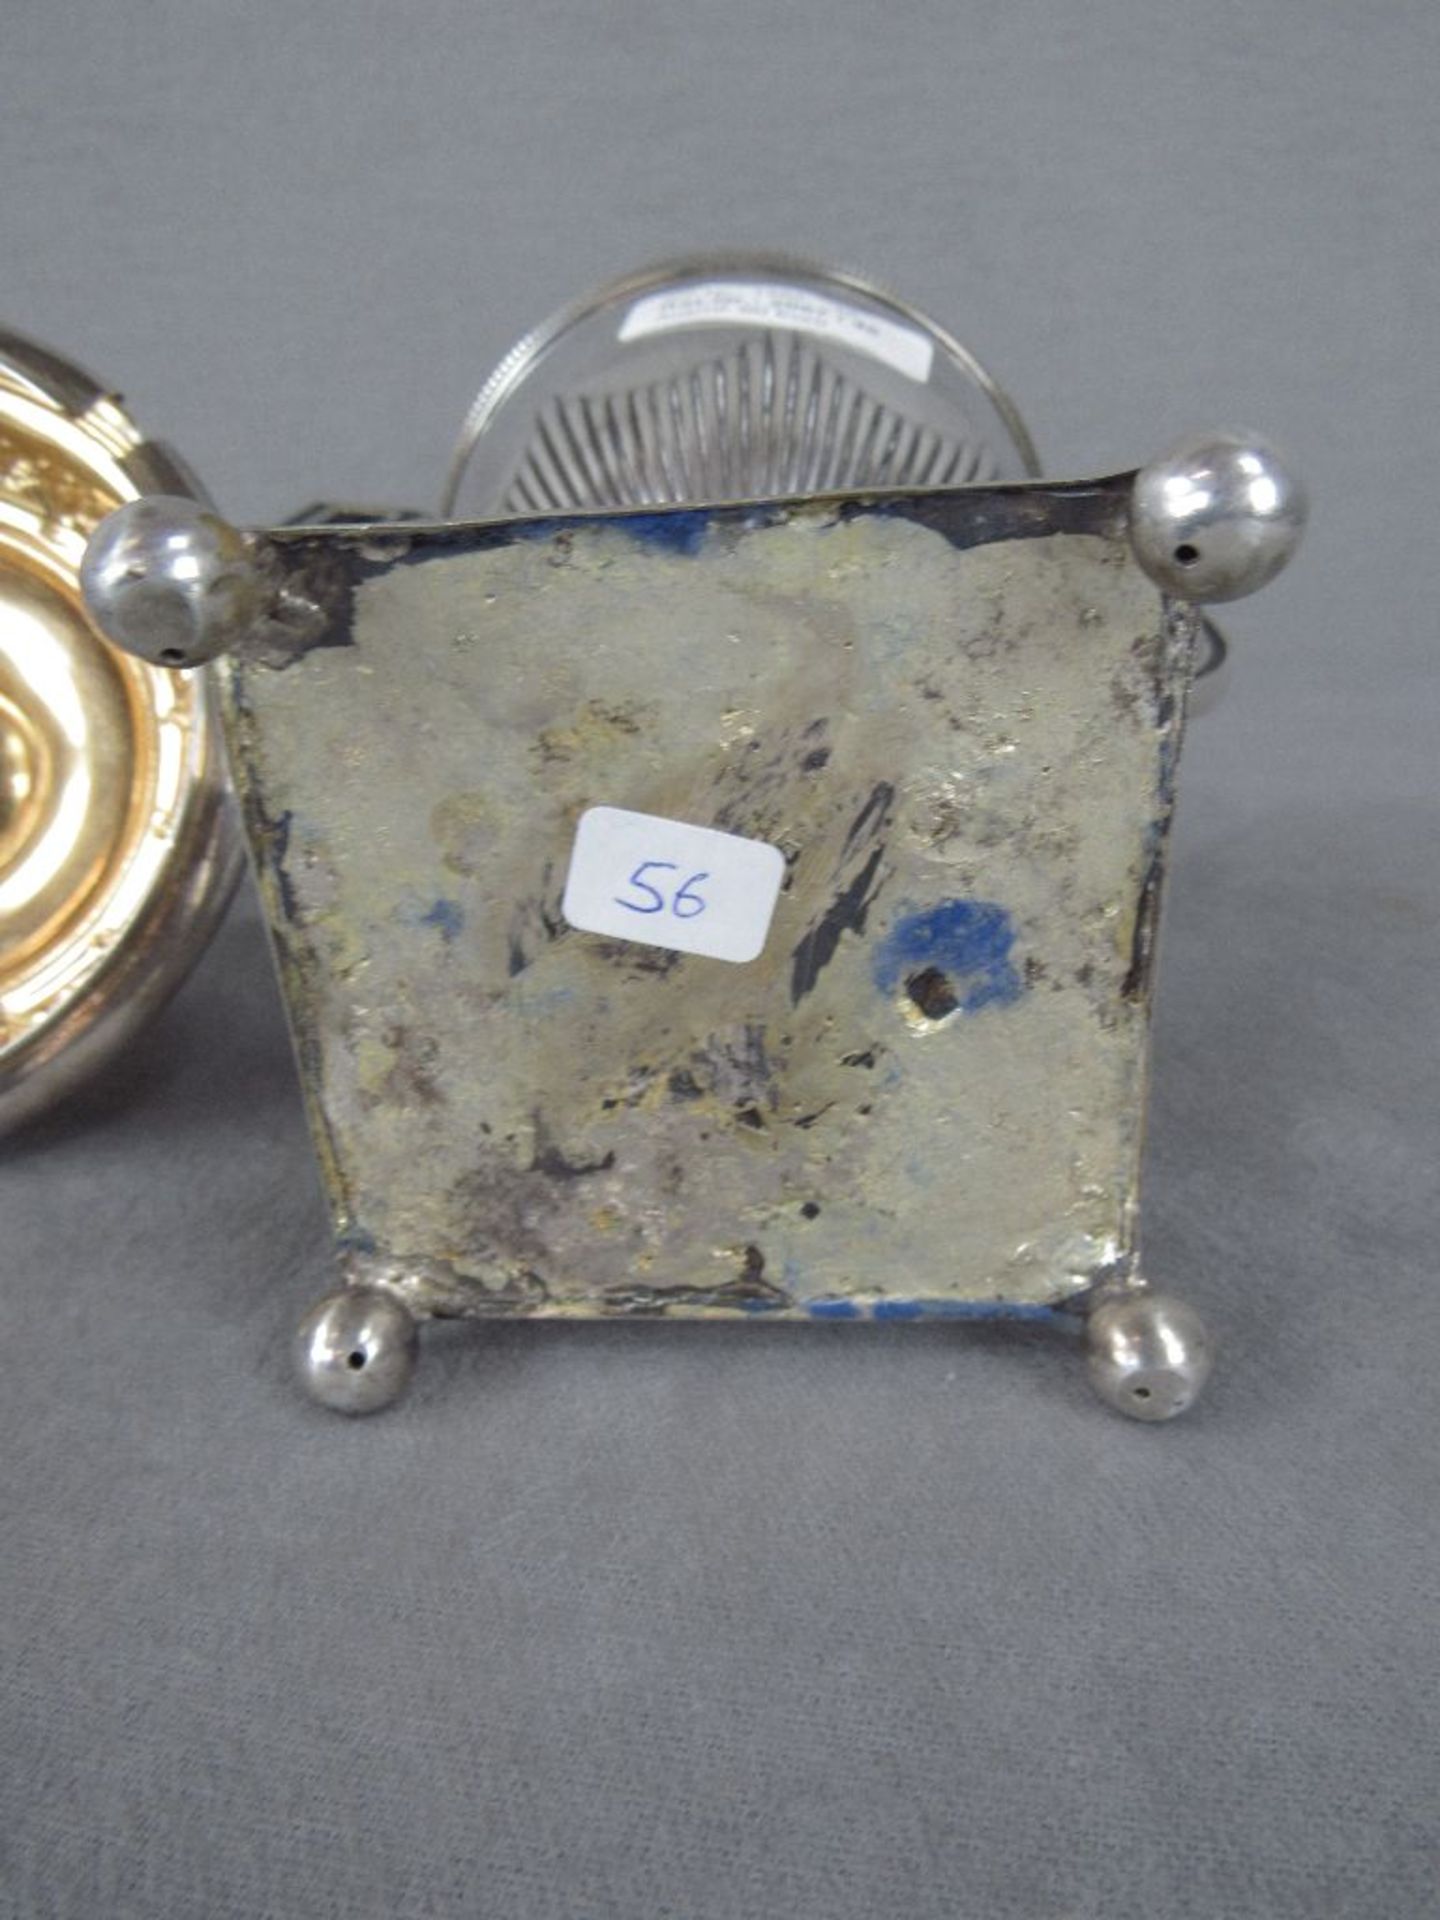 Amphorengefäß evtl Silber ungeprüft um 1910 zwei Handhaben vier Kugelfüße innen vergoldet sehr - Bild 5 aus 5